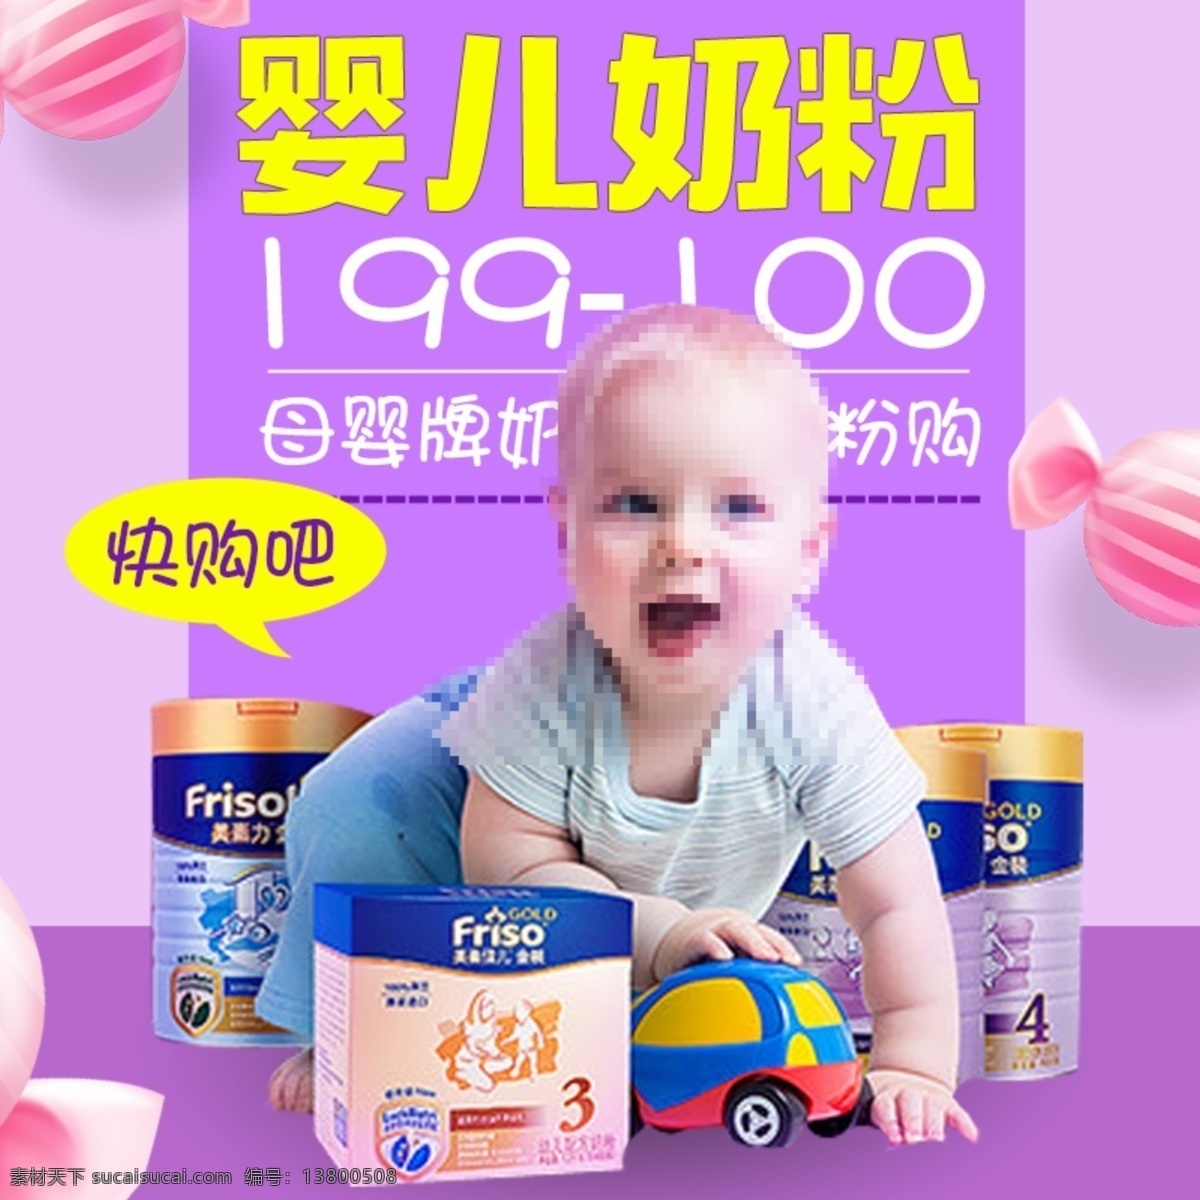 婴儿 奶粉 主 图 直通车 婴儿奶粉主图 紫色 促销 双十一 双十二 童装主图